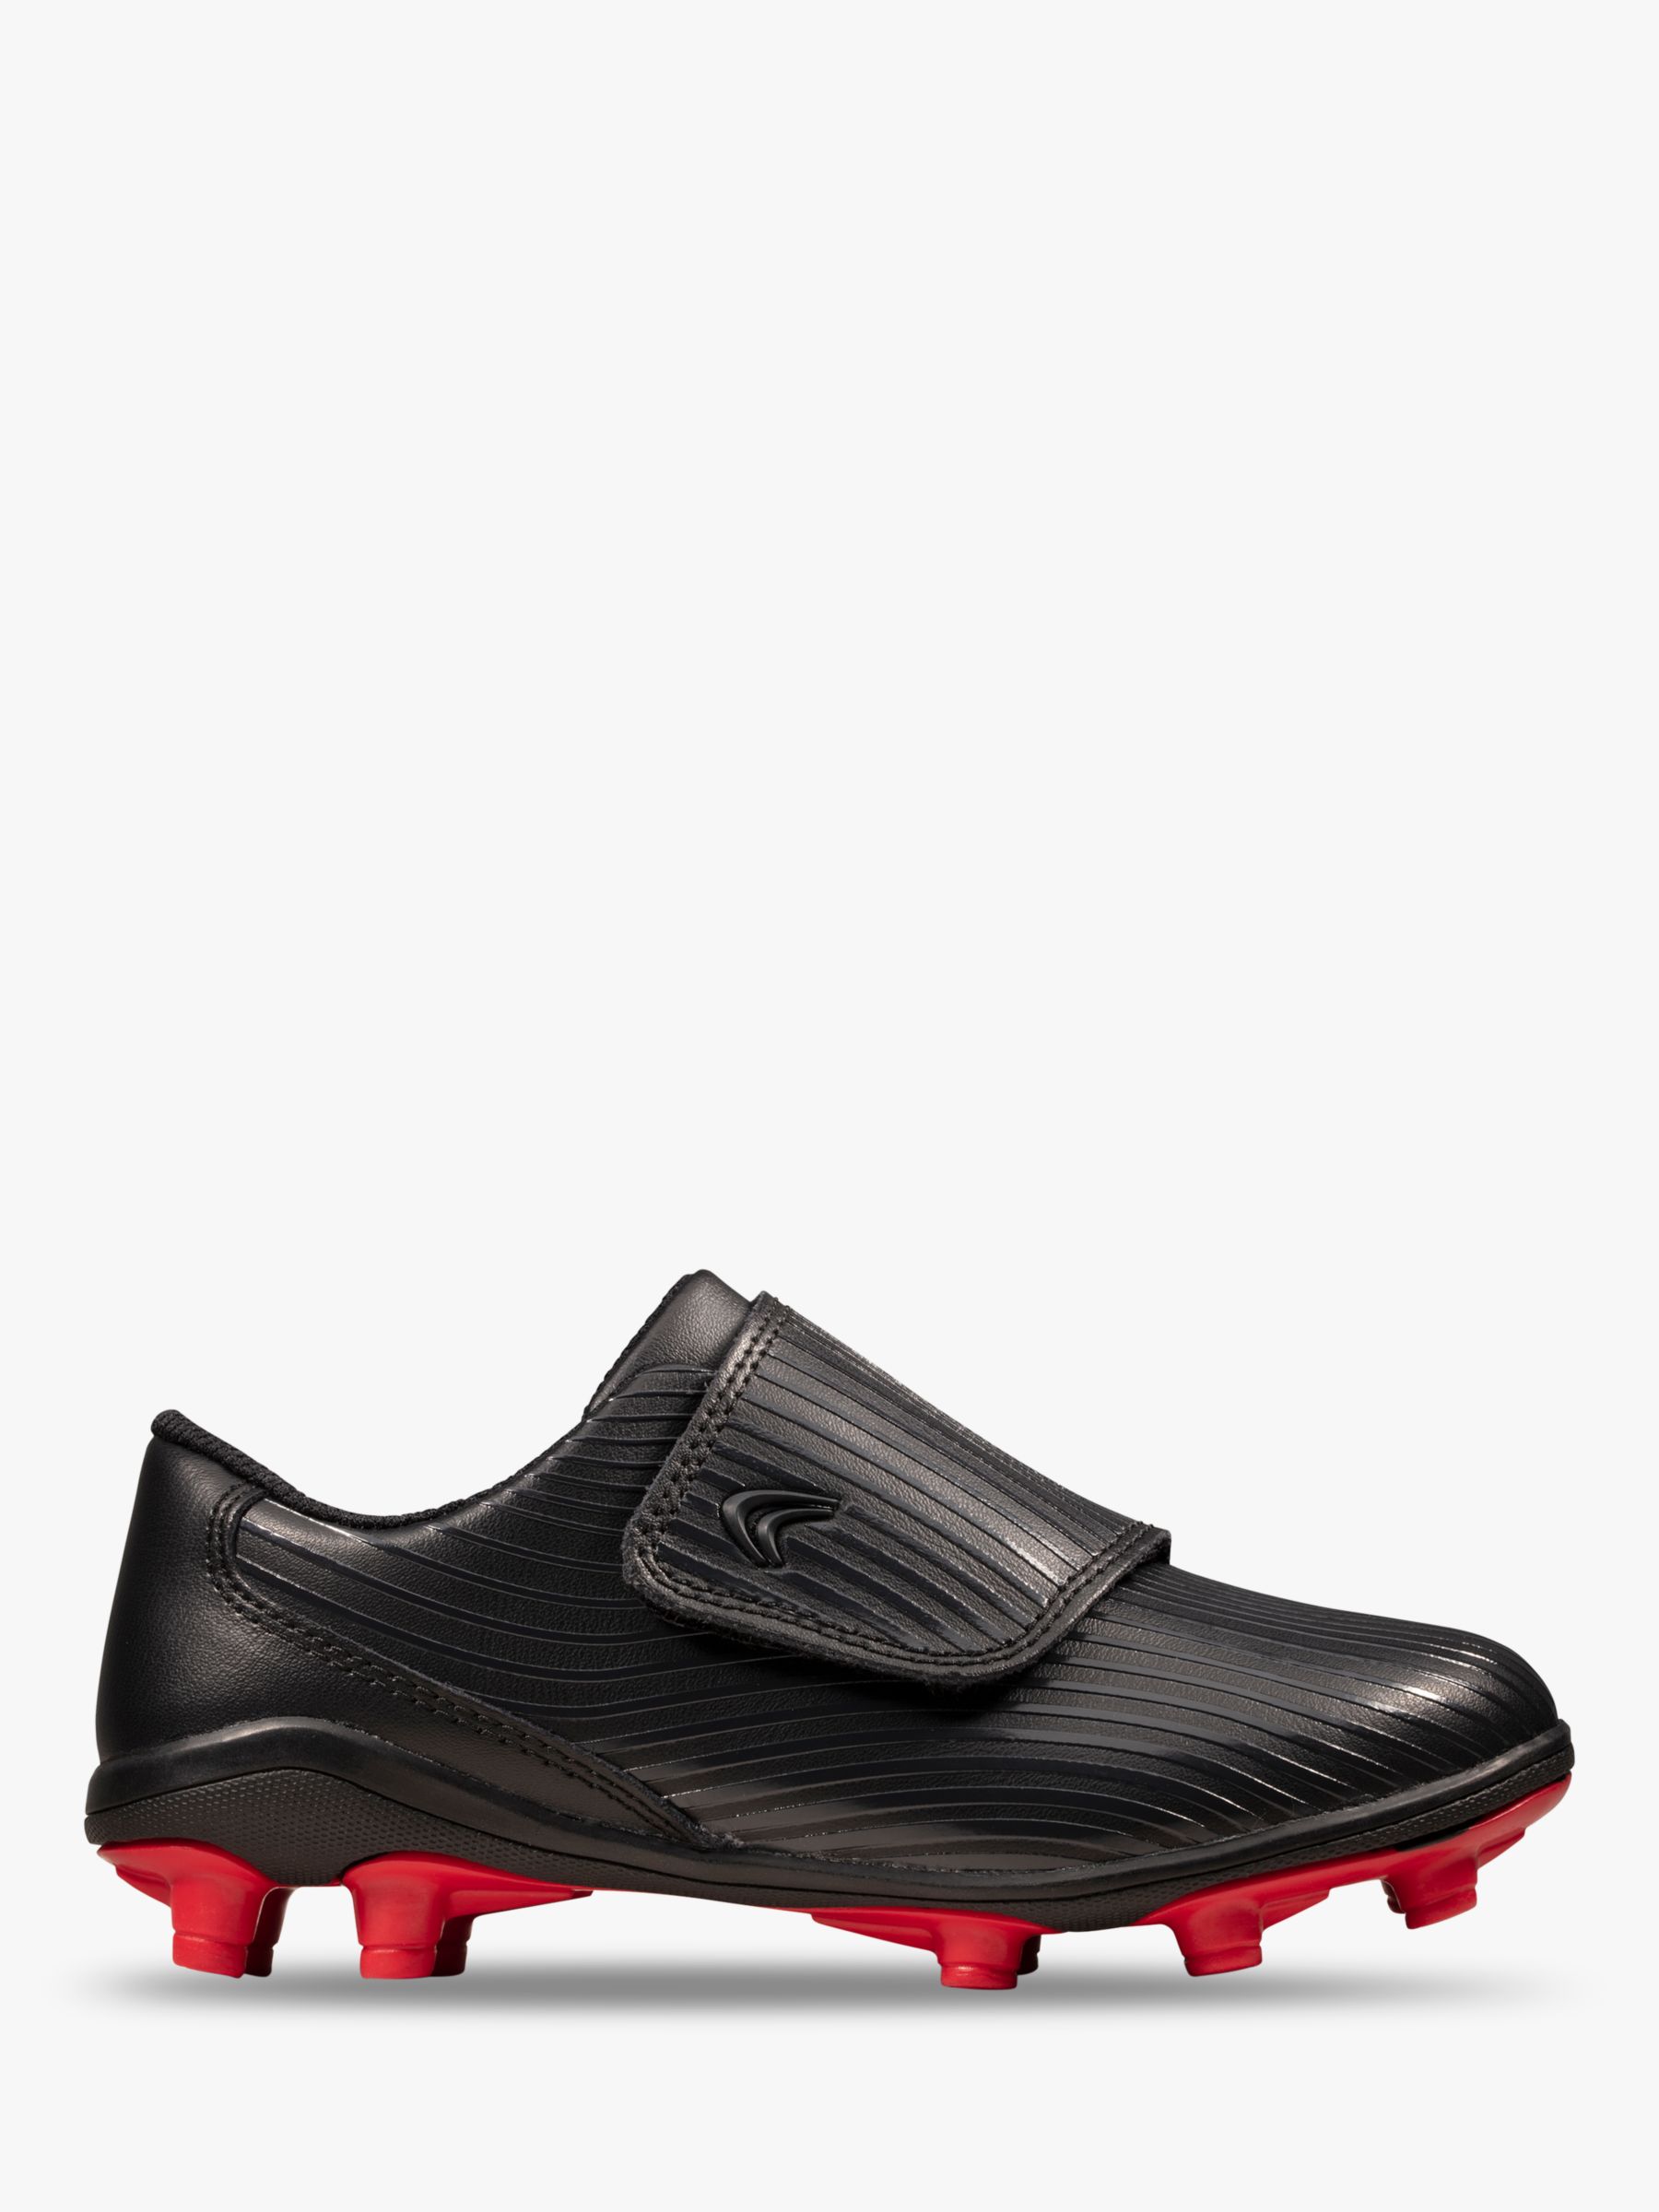 Kinetic Run Football Boots 